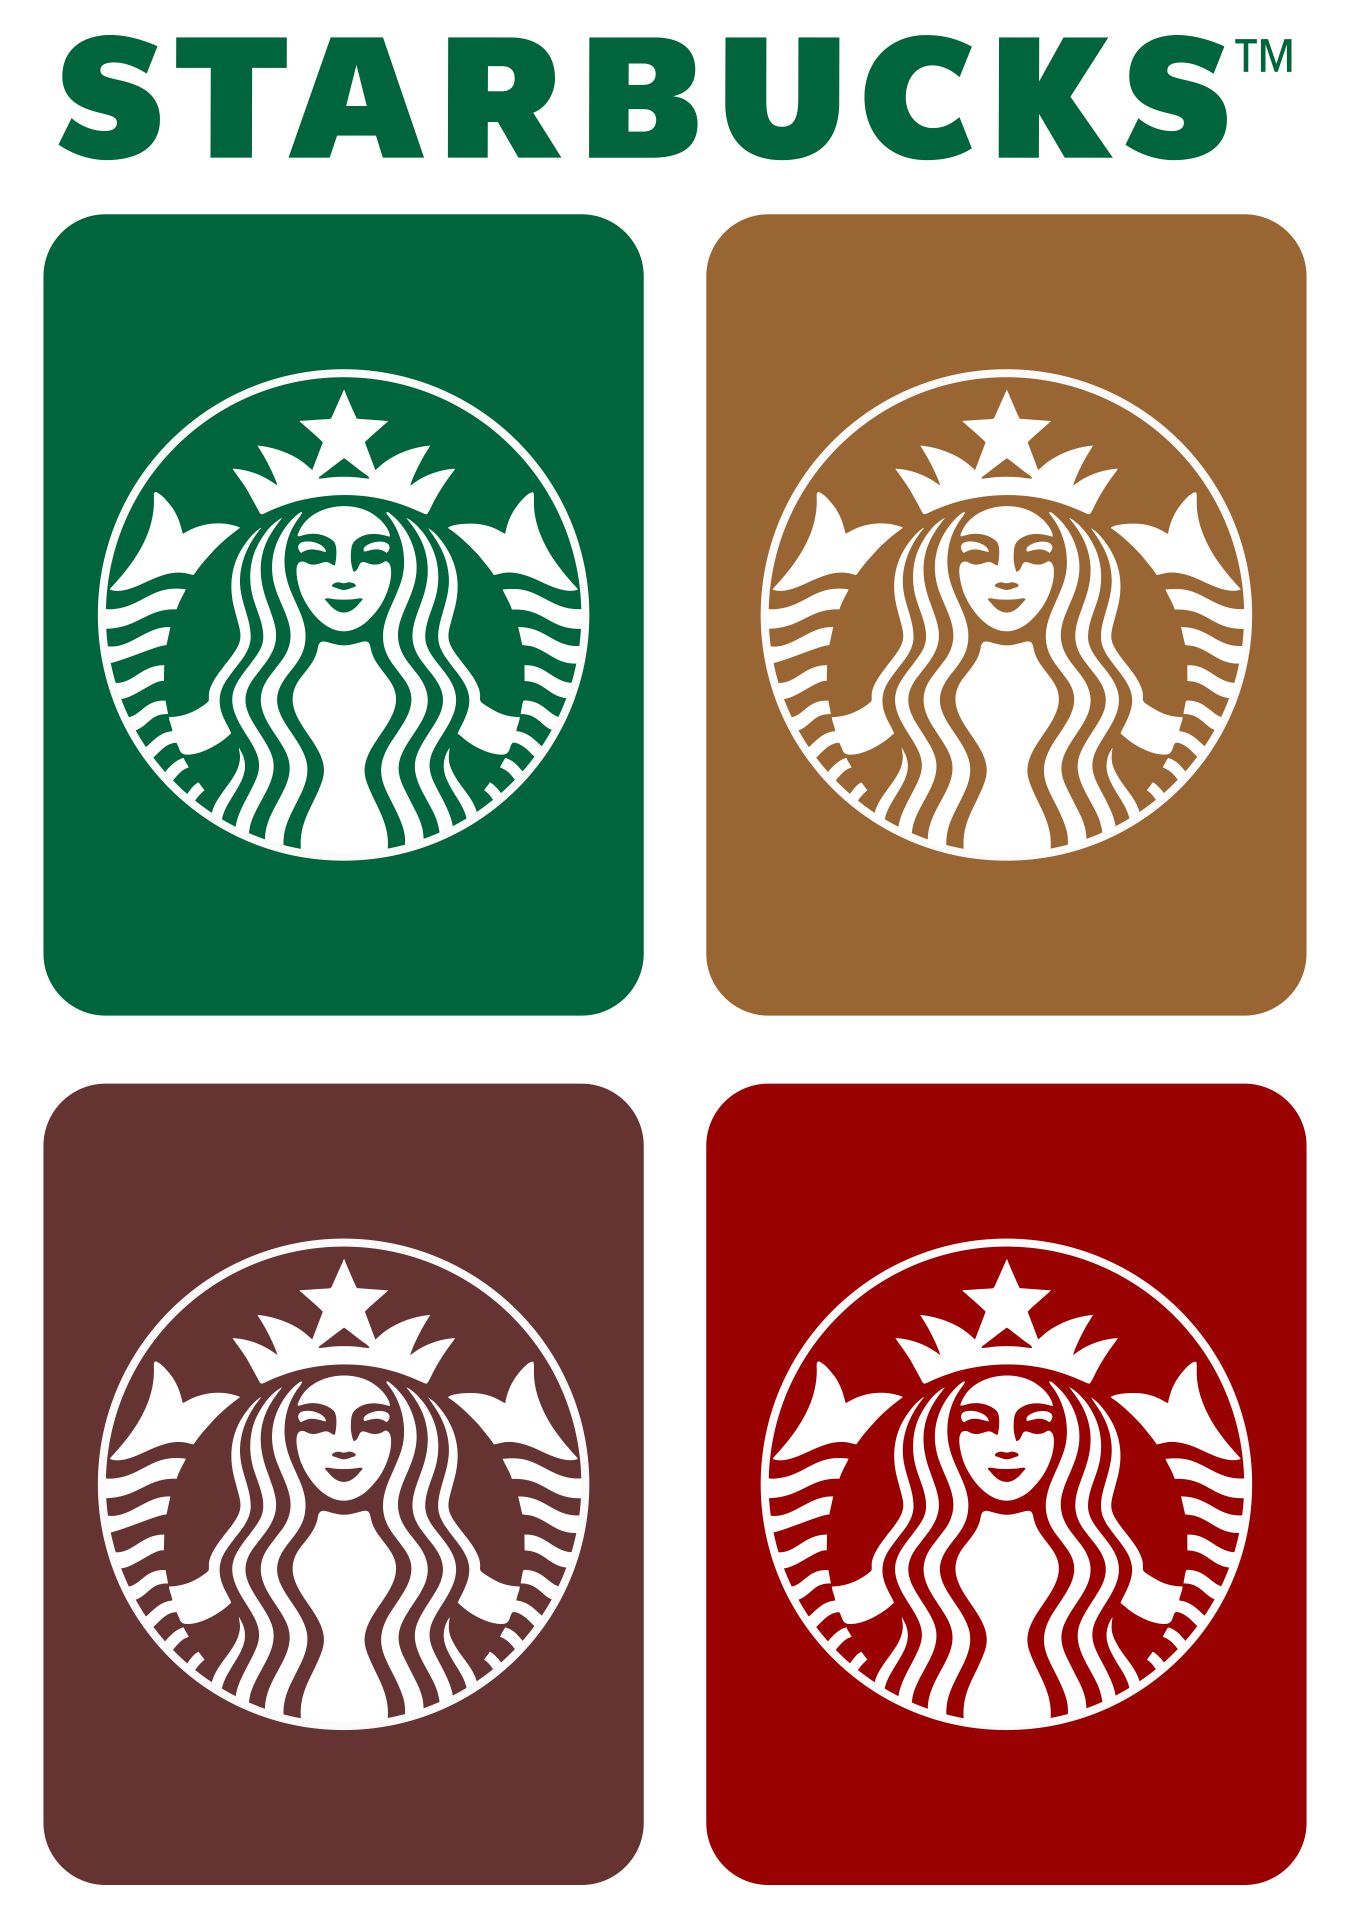 Free Printable Starbucks Letterhead Templates